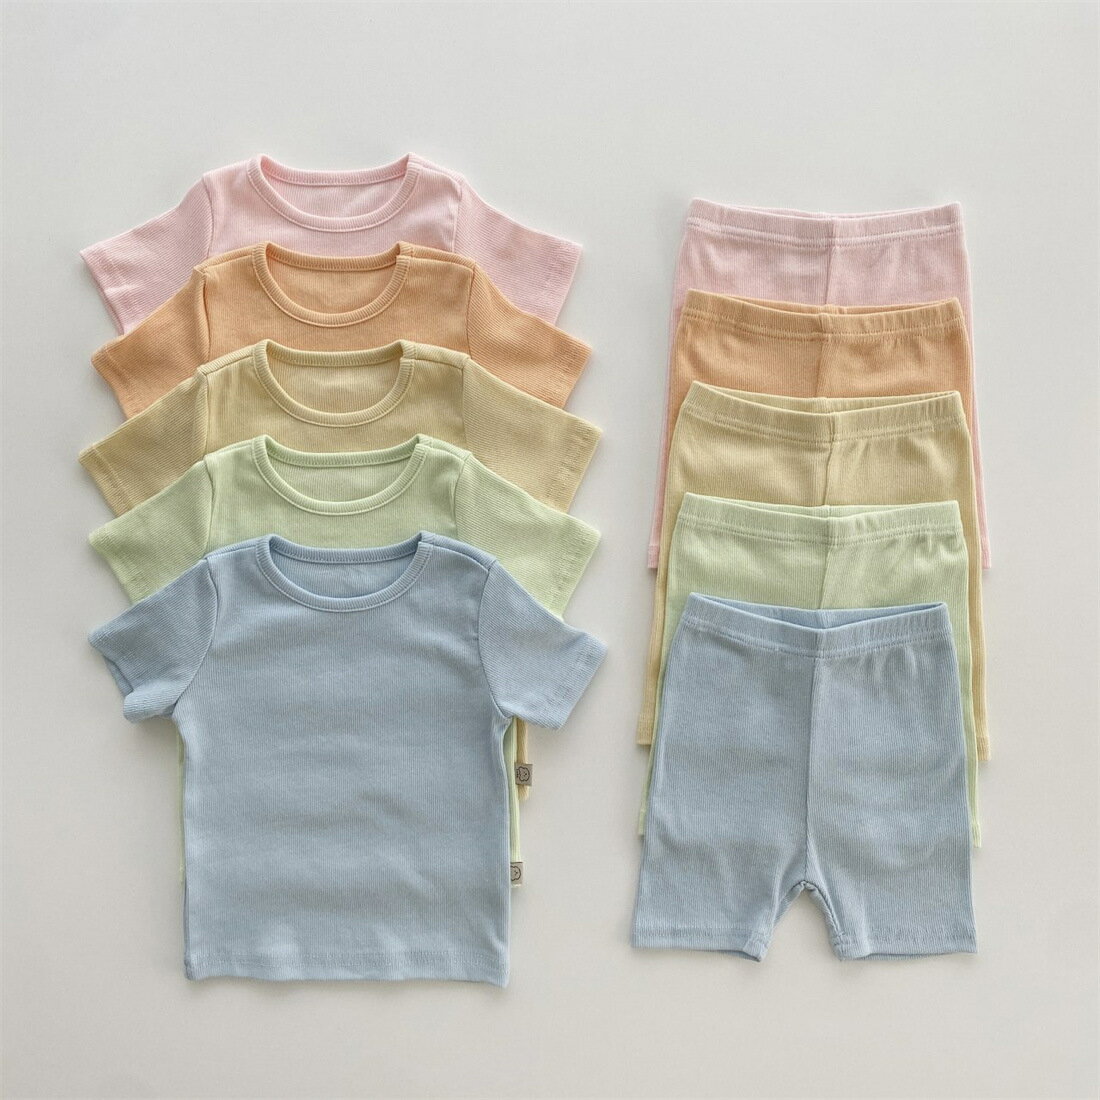 韓國童裝寶寶居家純棉套裝嬰童凈色坑條家居兩件套夏裝家居服套裝